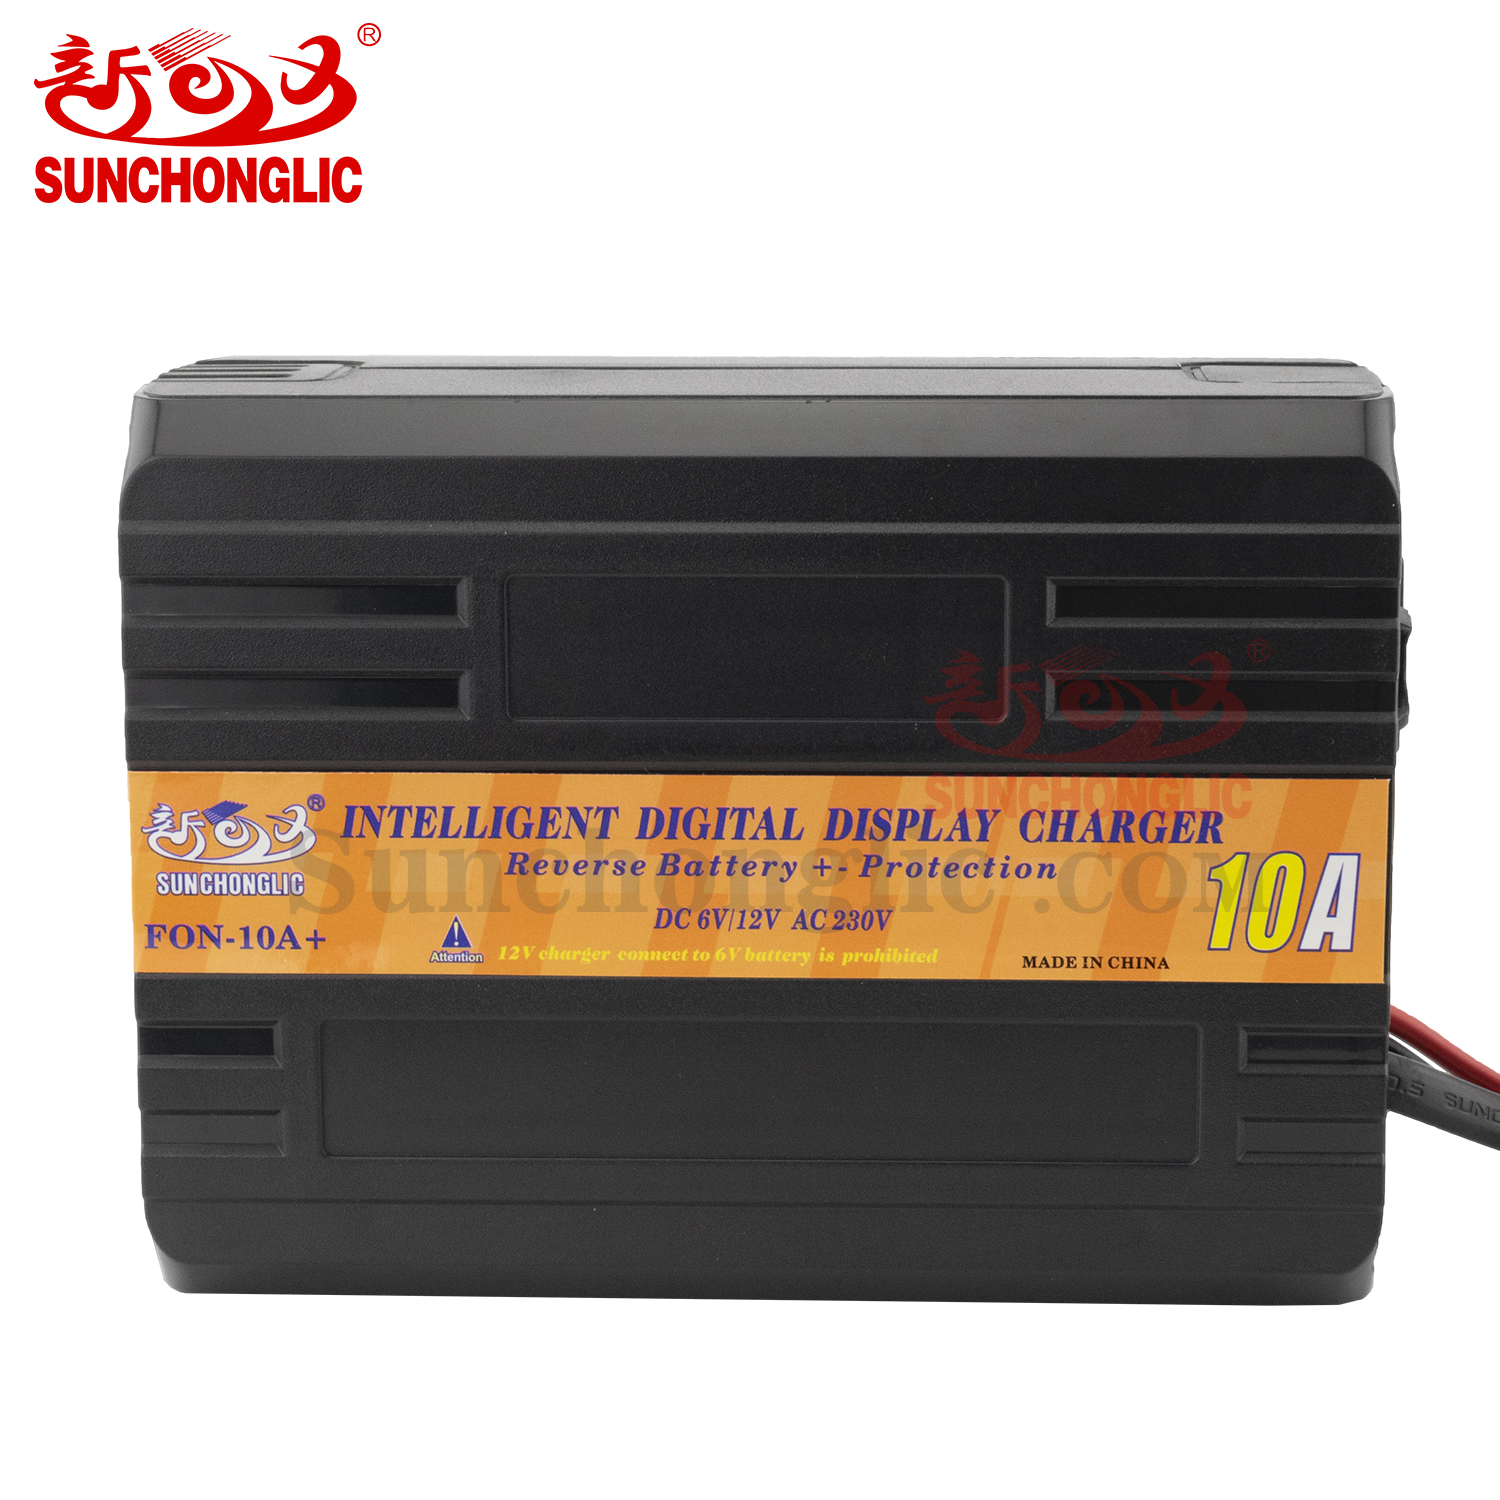 Fast charging 6V 12V lead acid battery charger